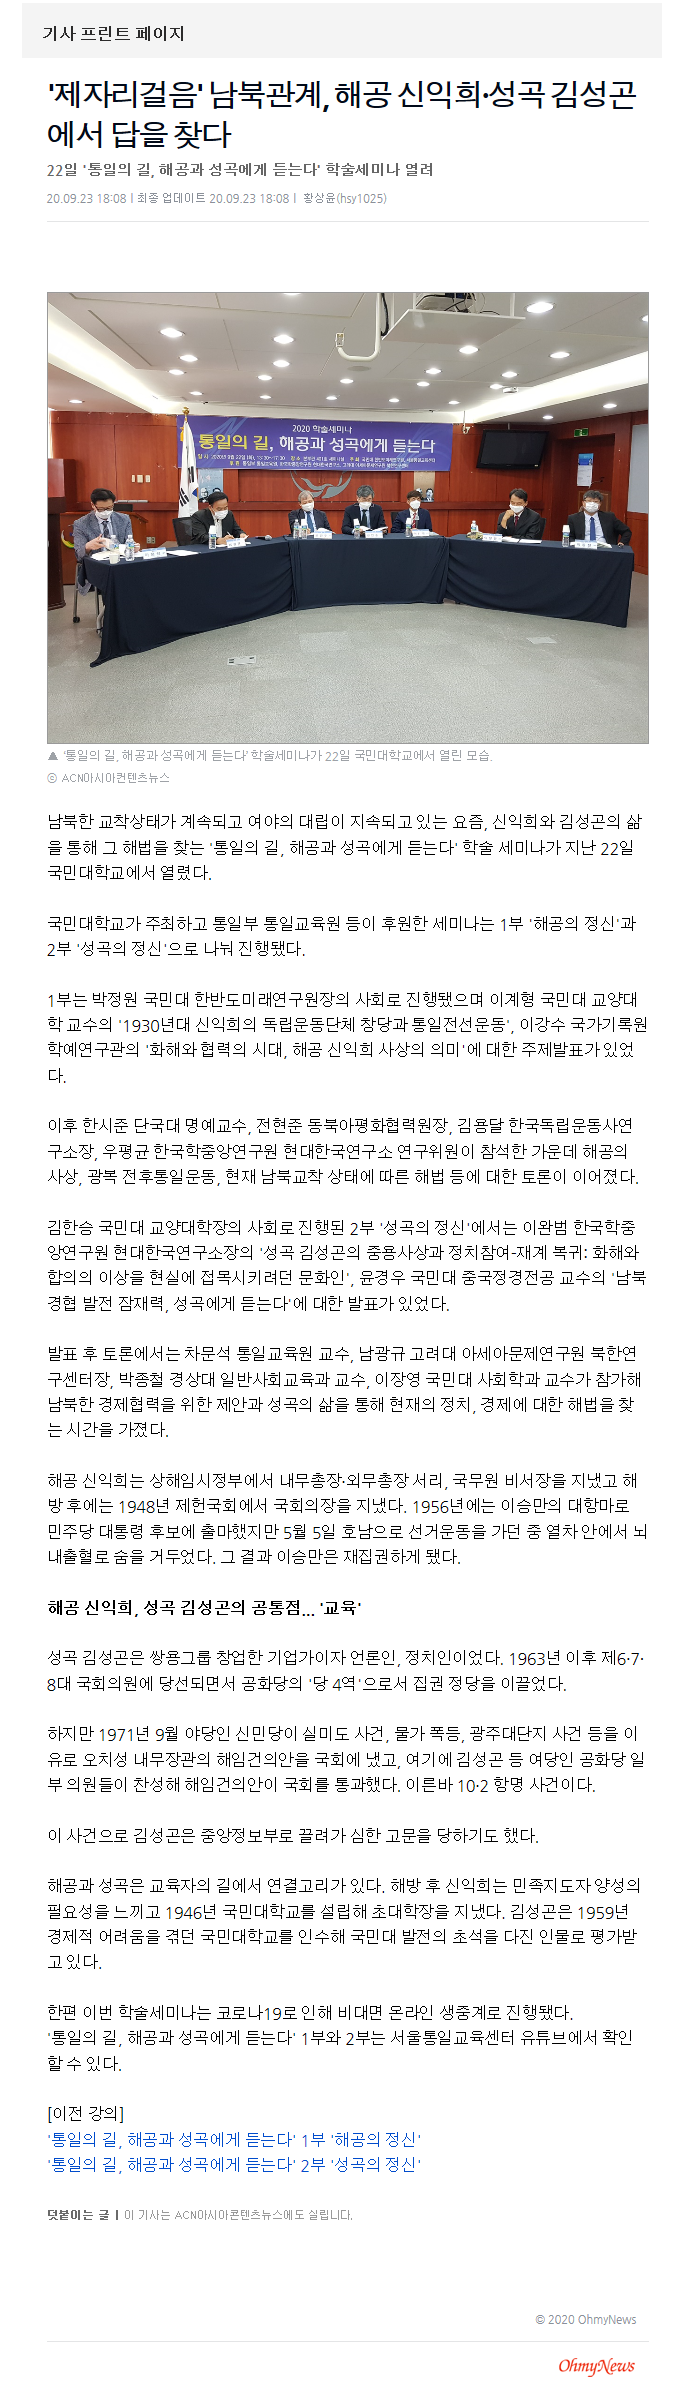 오마이뉴스 - '제자리걸음' 남북관계....2020.09.23.png